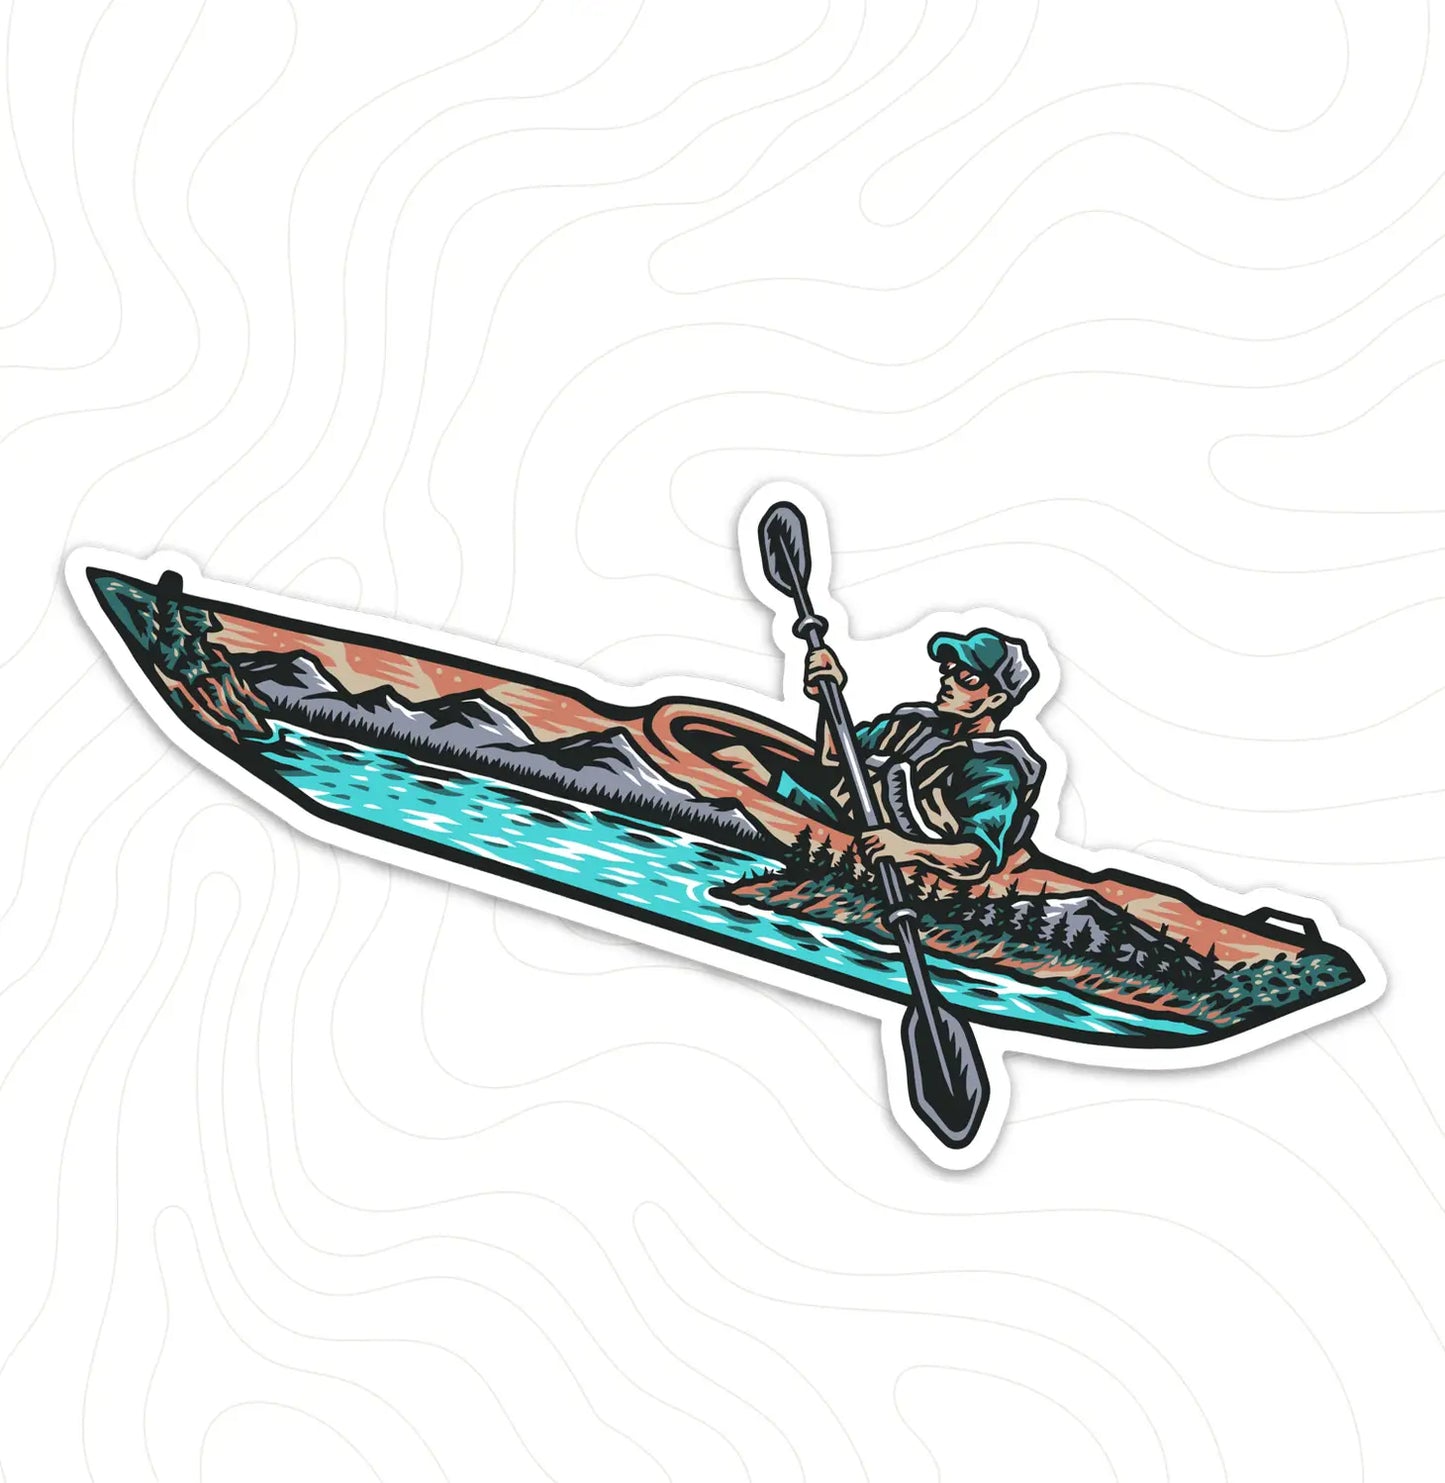 Kayaking With Lake View Sticker